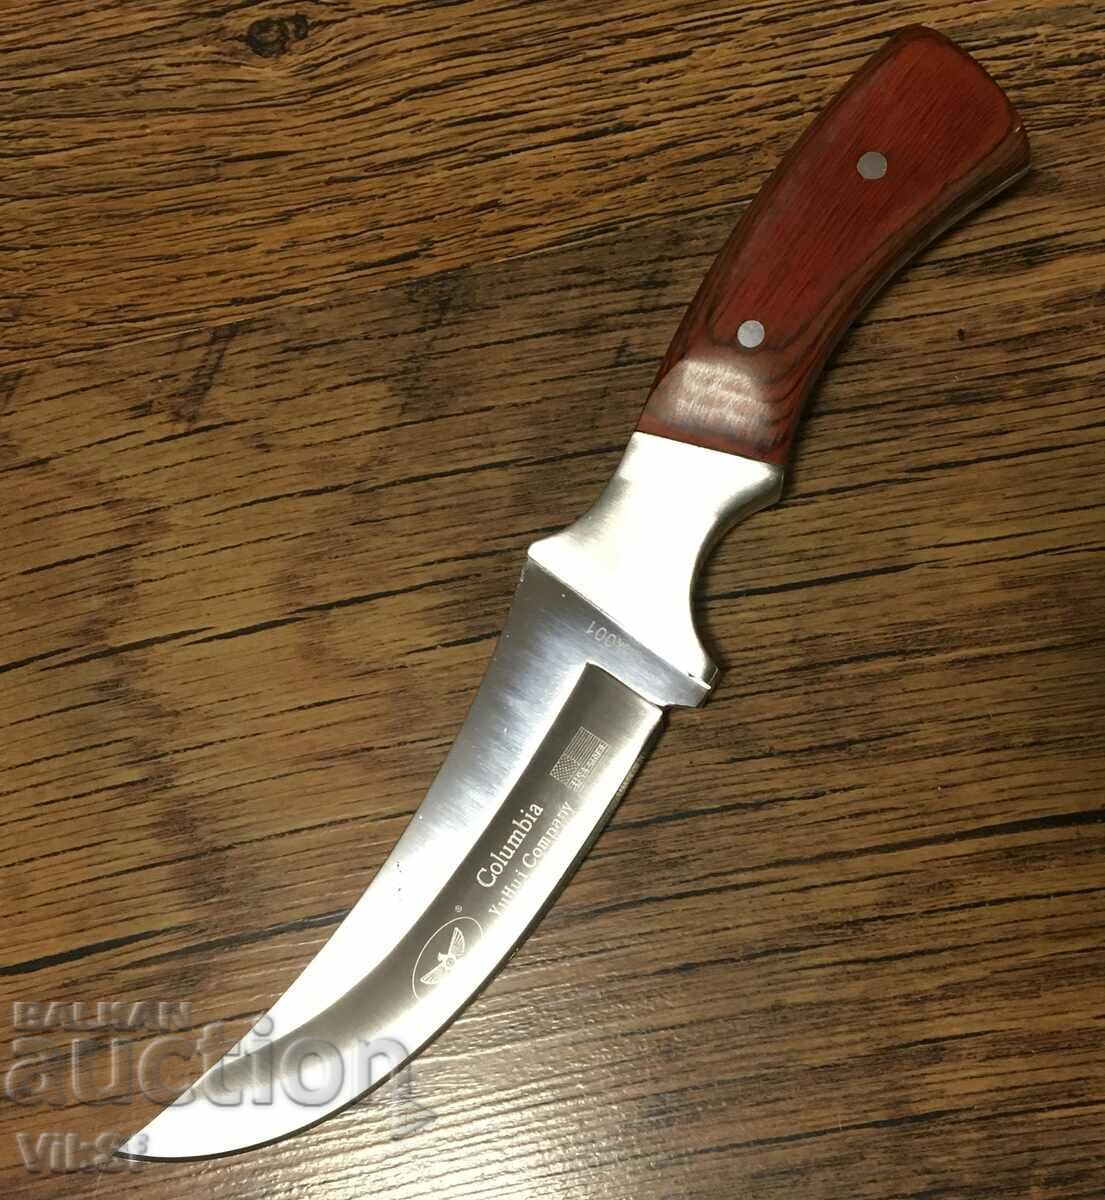 Υπέροχο μαχαίρι - κυνήγι, για ξύσιμο, full tang 115X215